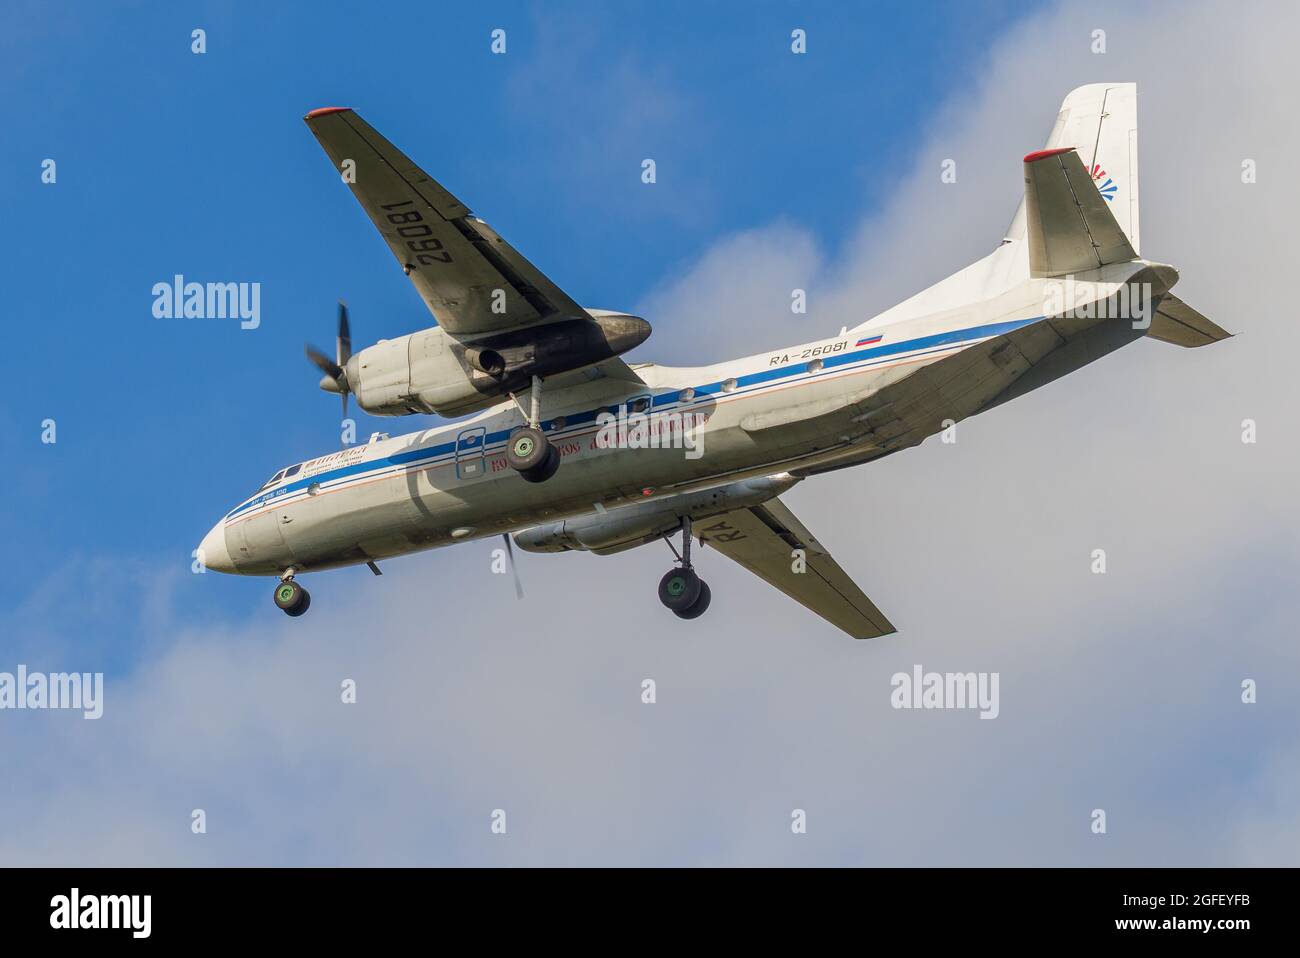 ST. PETERSBURG, RUSSIA - 28 OTTOBRE 2020: Aereo AN-26B-100 'Sharya' (RA-26081) della compagnia aerea Kostroma che vola in aereo Foto Stock